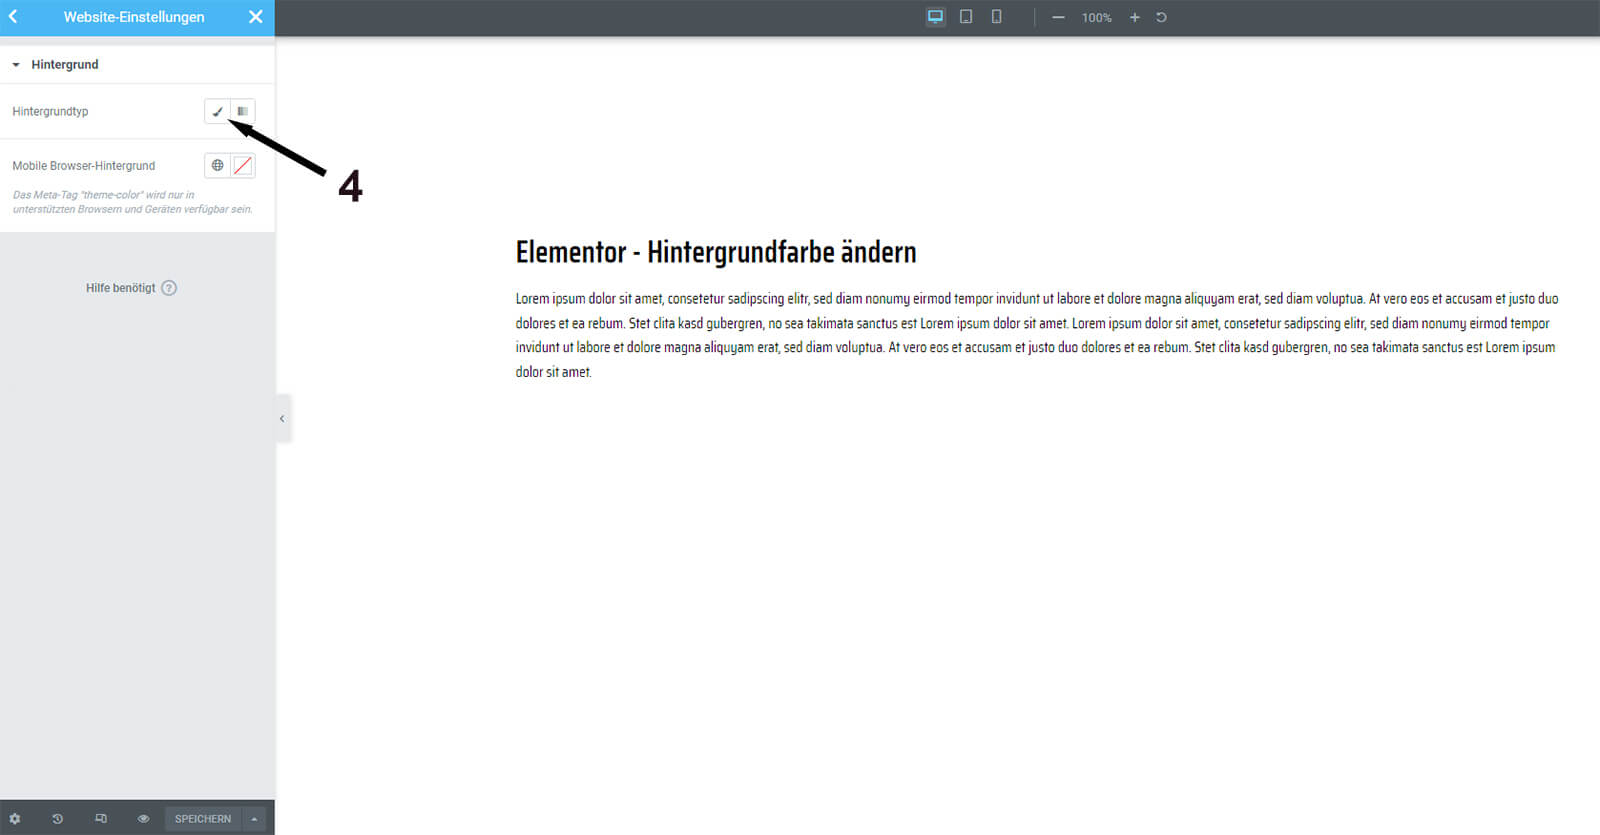 Elementor - Hintergrundfarbe ändern in den Website Einstellungen - Schritt 4